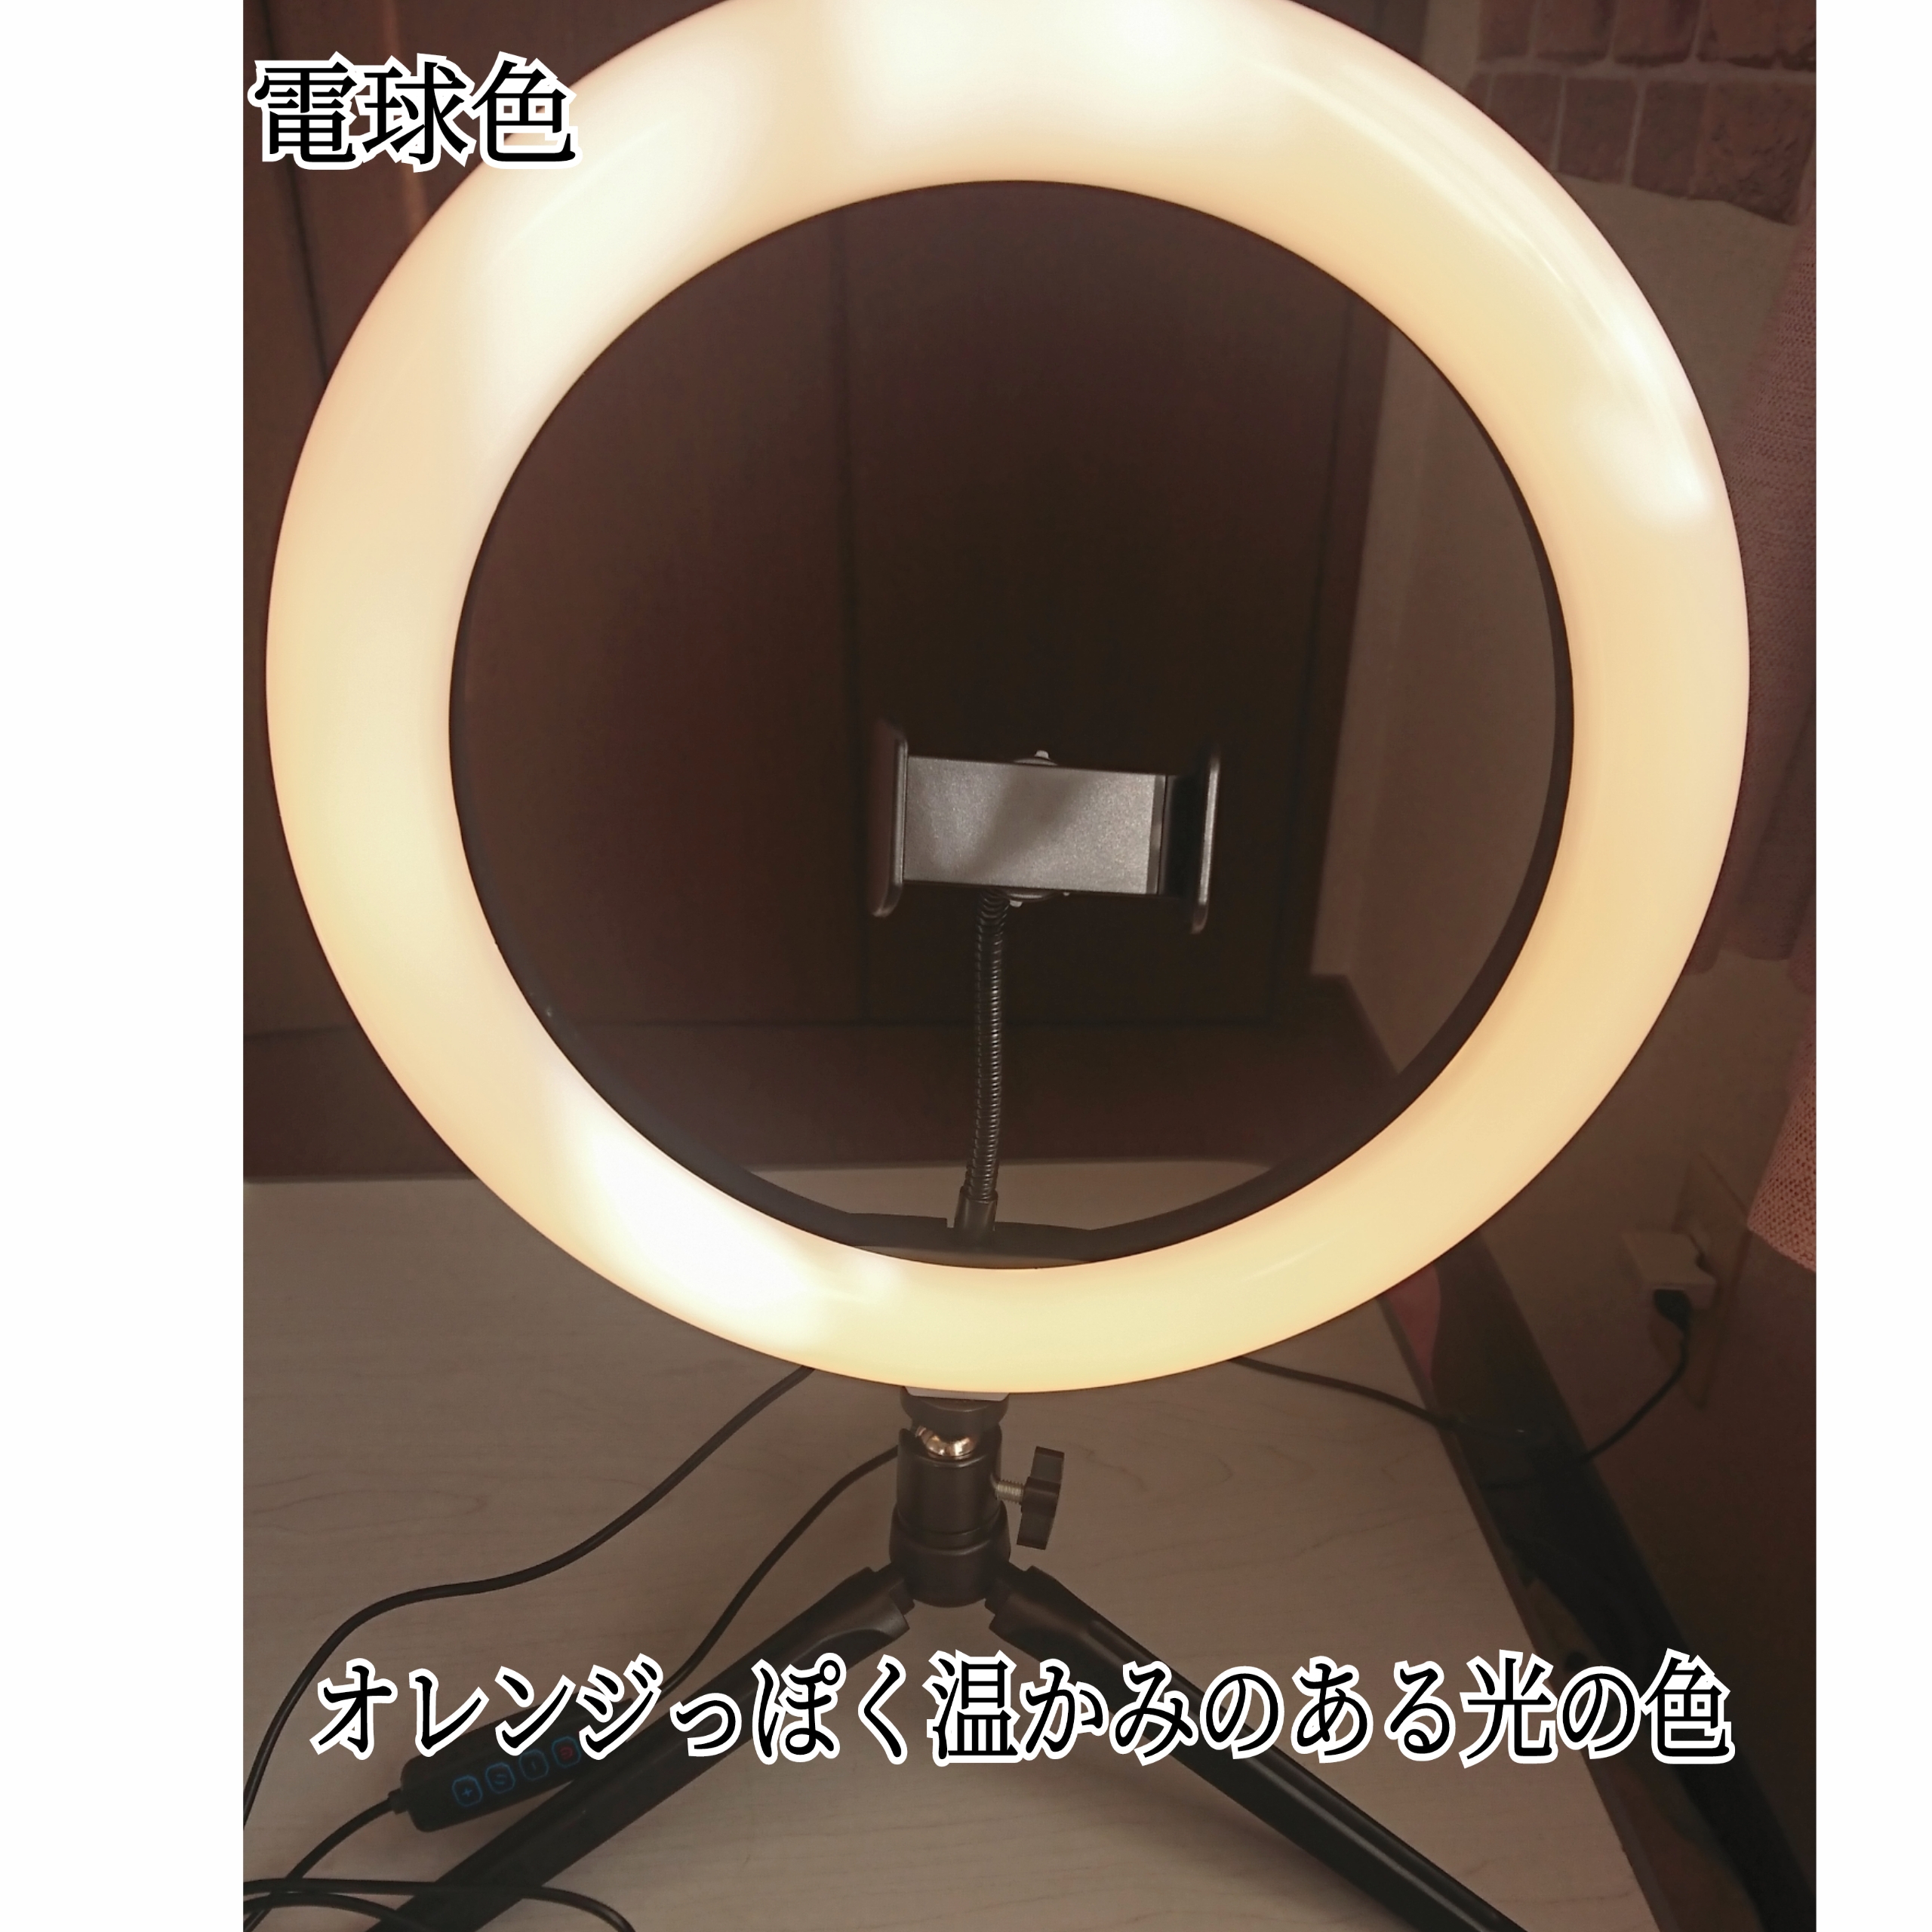 3COINS LEDリングライトスマホスタンドを使ったYuKaRi♡さんのクチコミ画像8